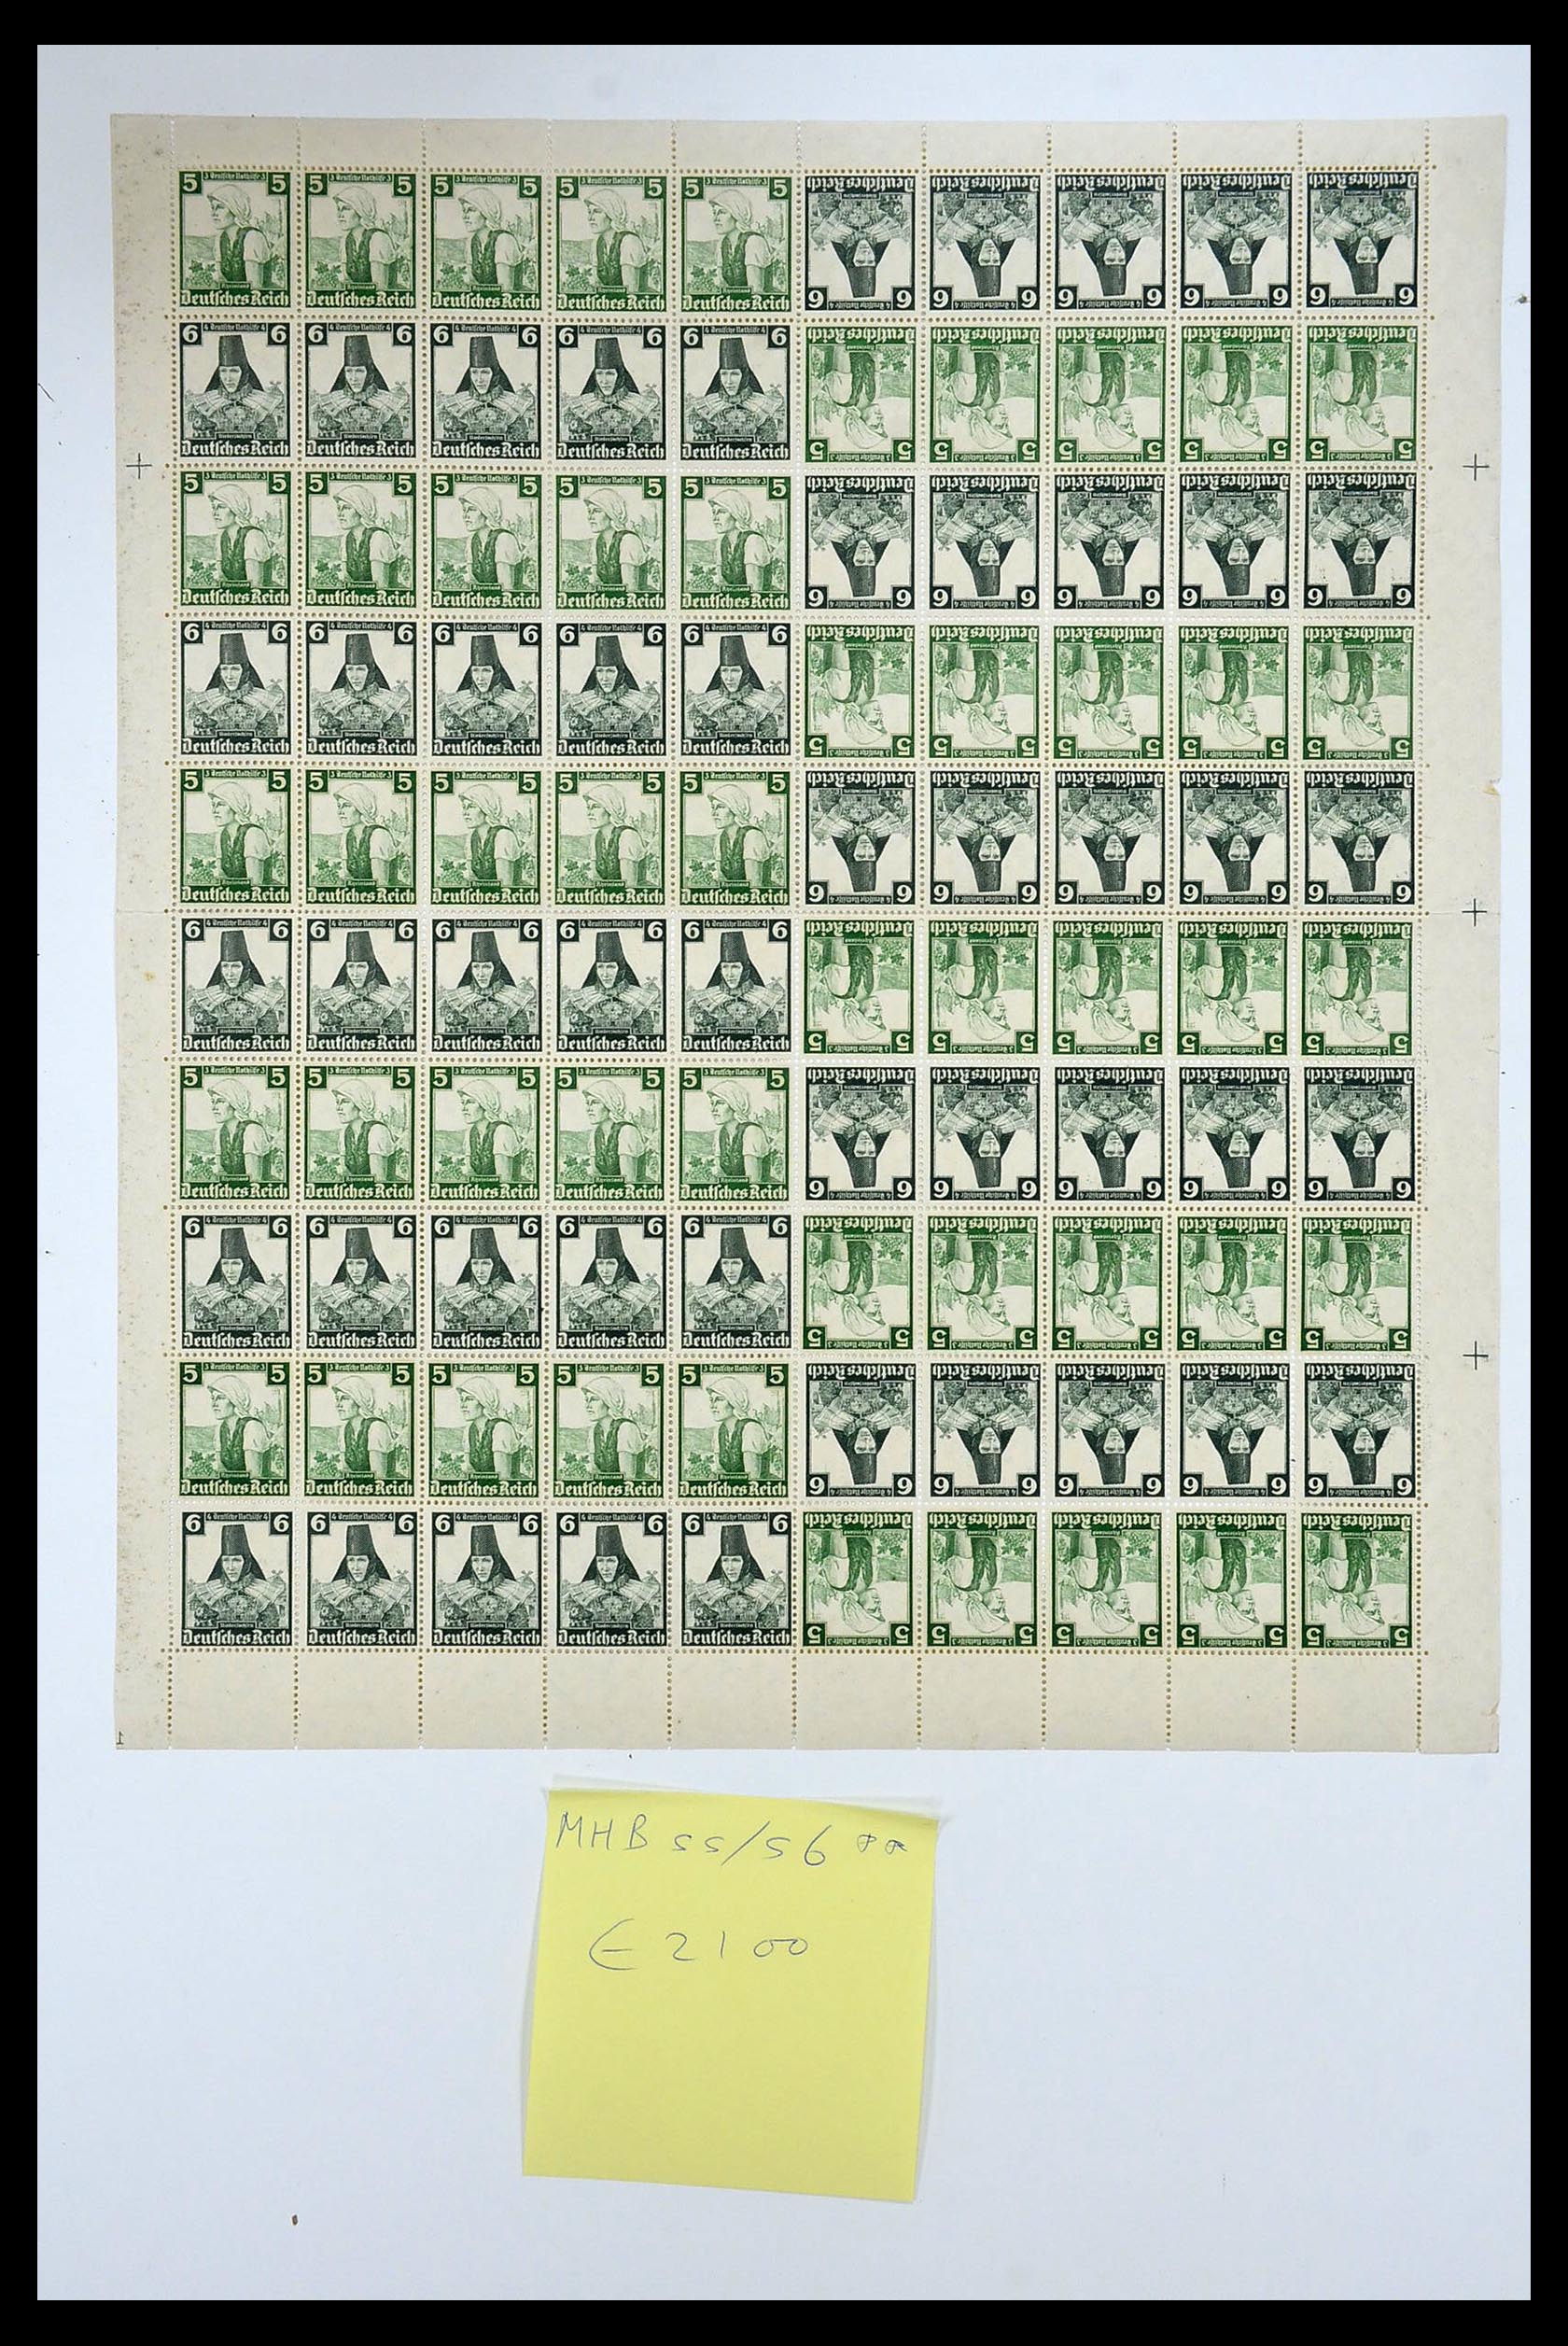 35075 035 - Stamp Collection 35075 German Reich Markenheftchenbogen 1933-1941.